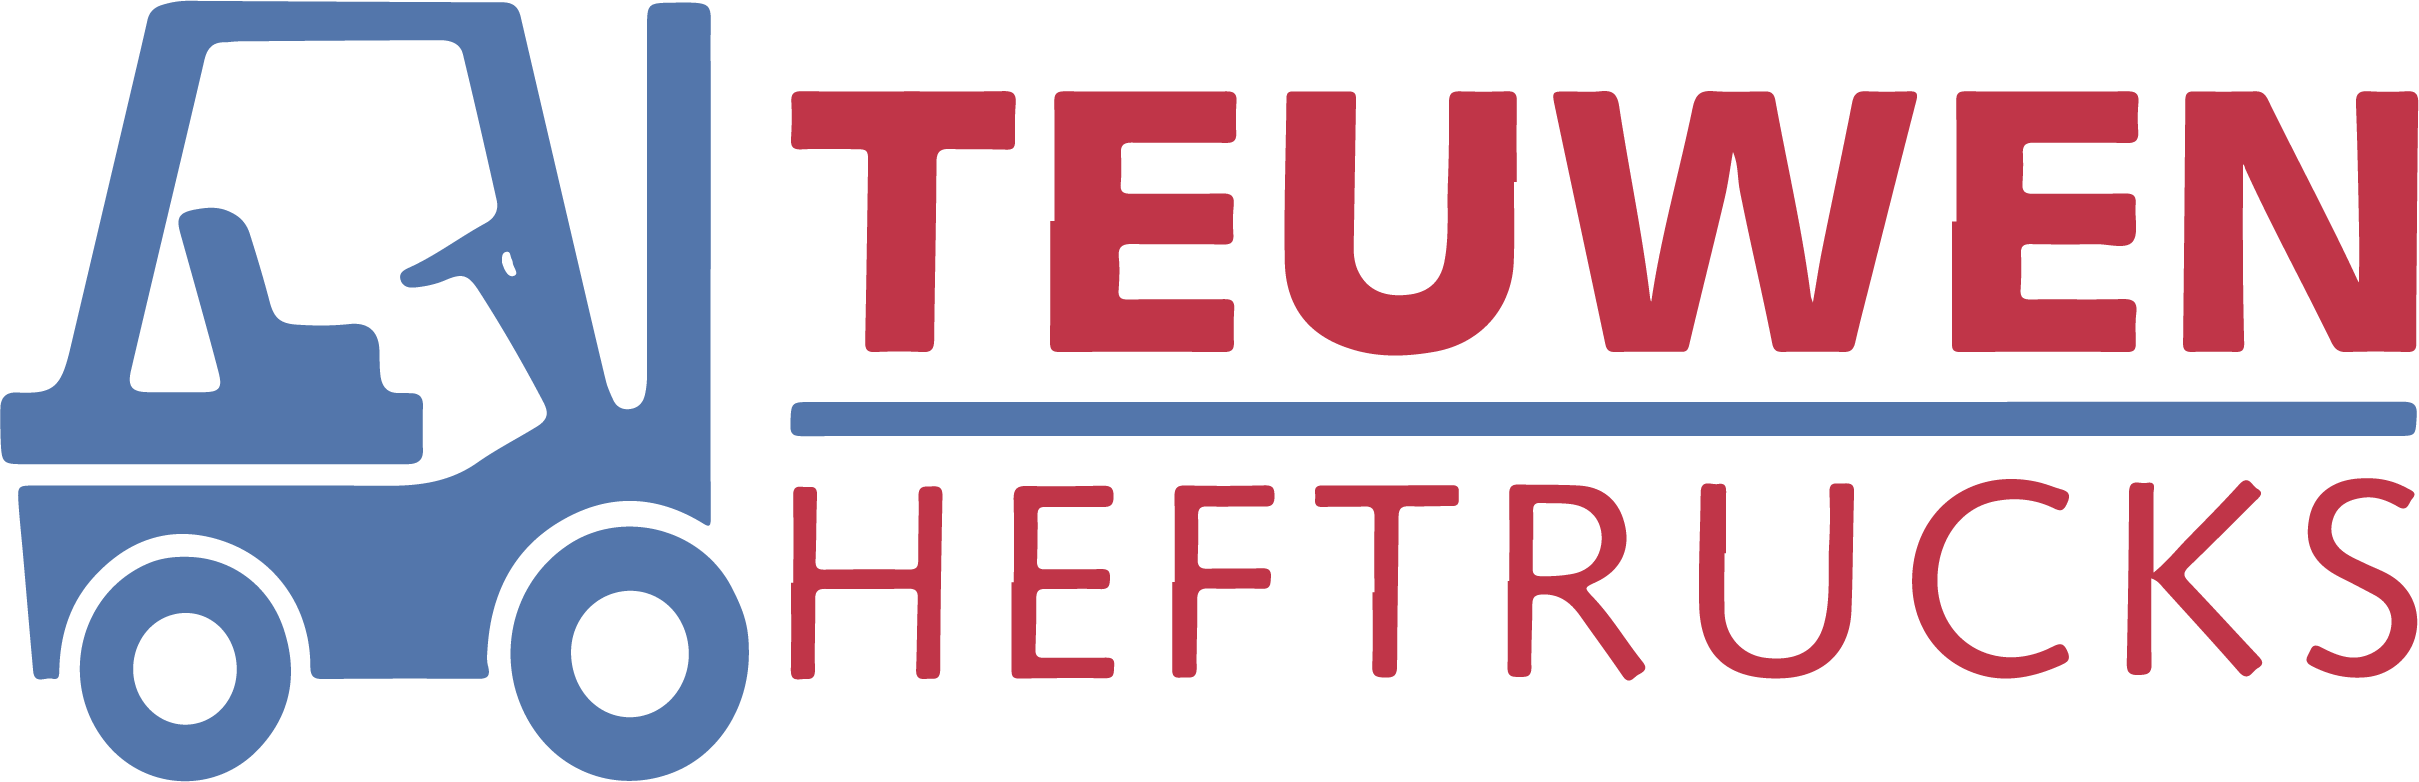 Teuwen Heftrucks logo 01